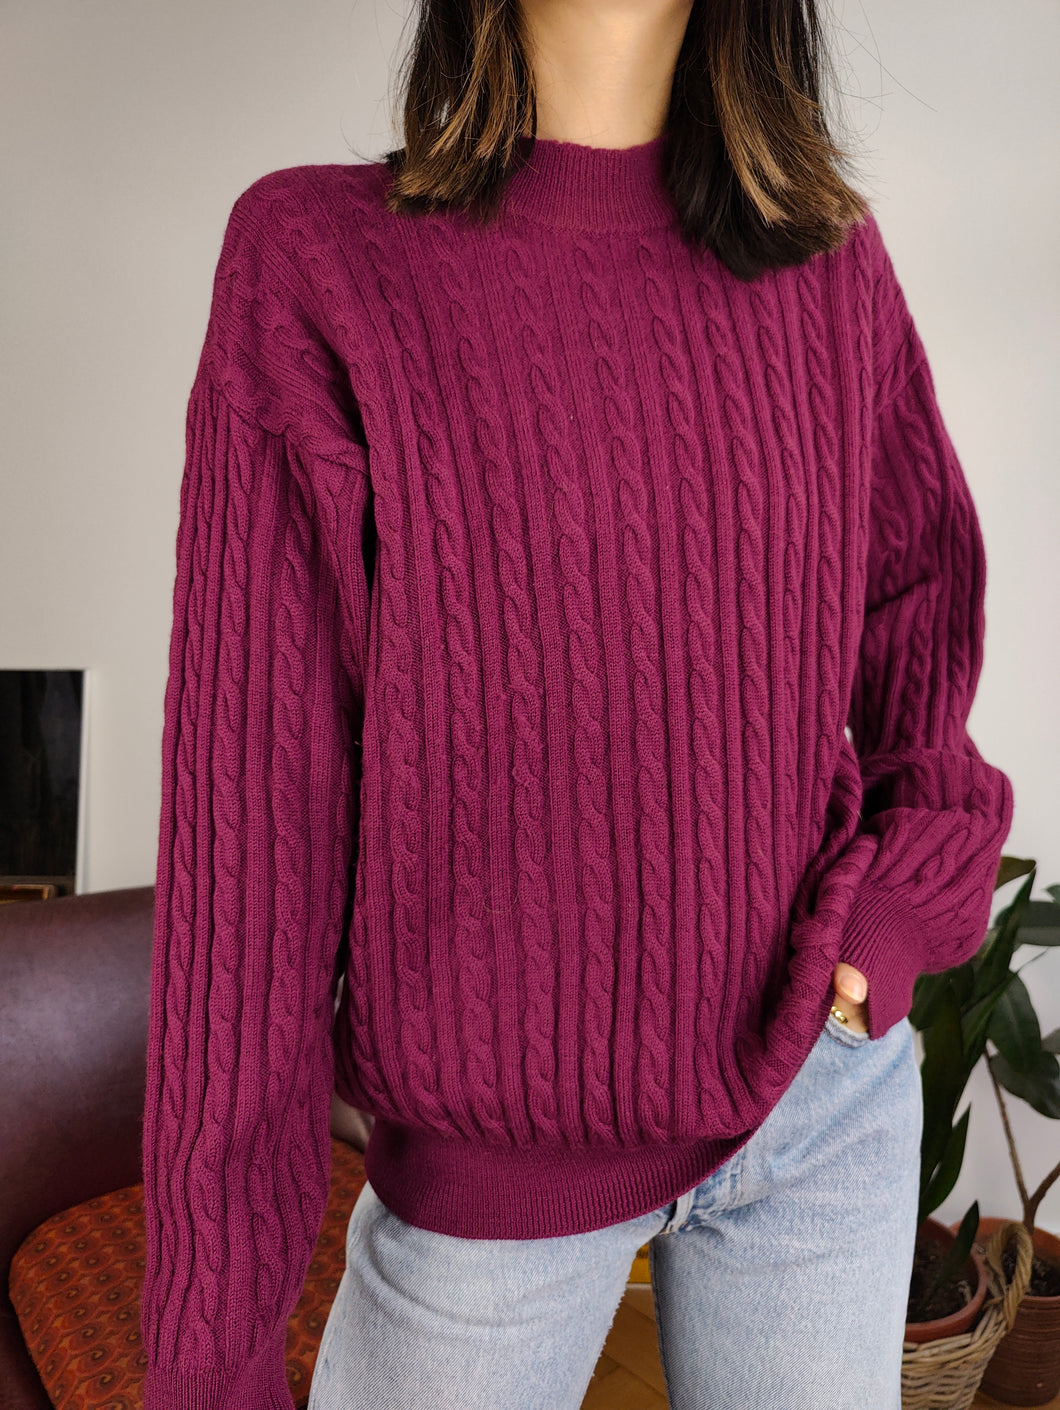 Vintage 100 % Wolle Zopfmuster Pullover lila weinrot schlicht Herbst Winter Strickpullover Rollkragenpullover M